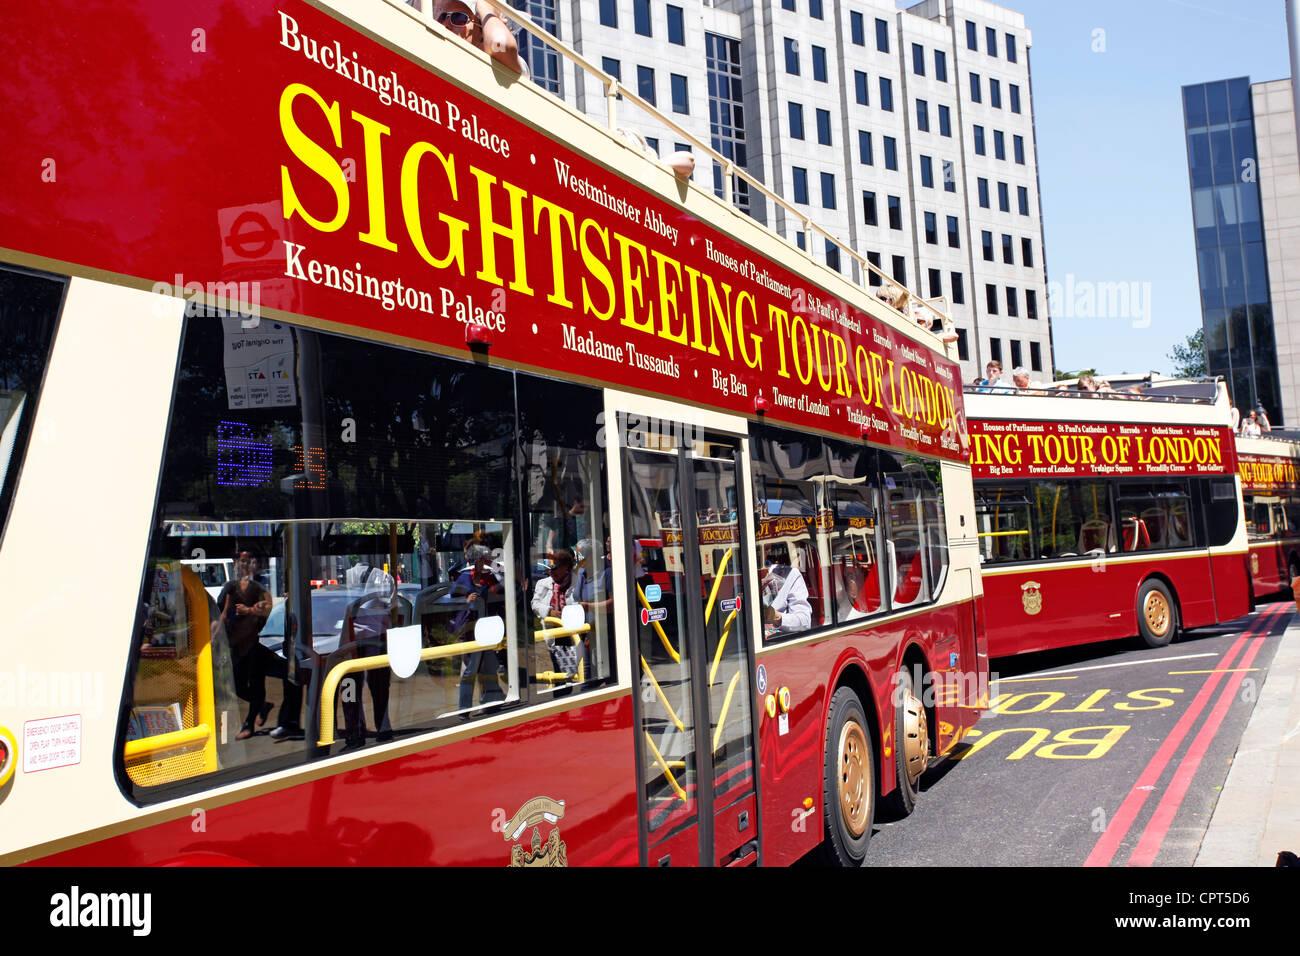 Double decker tourist Sightseeing tour bus, London, England Stock Photo